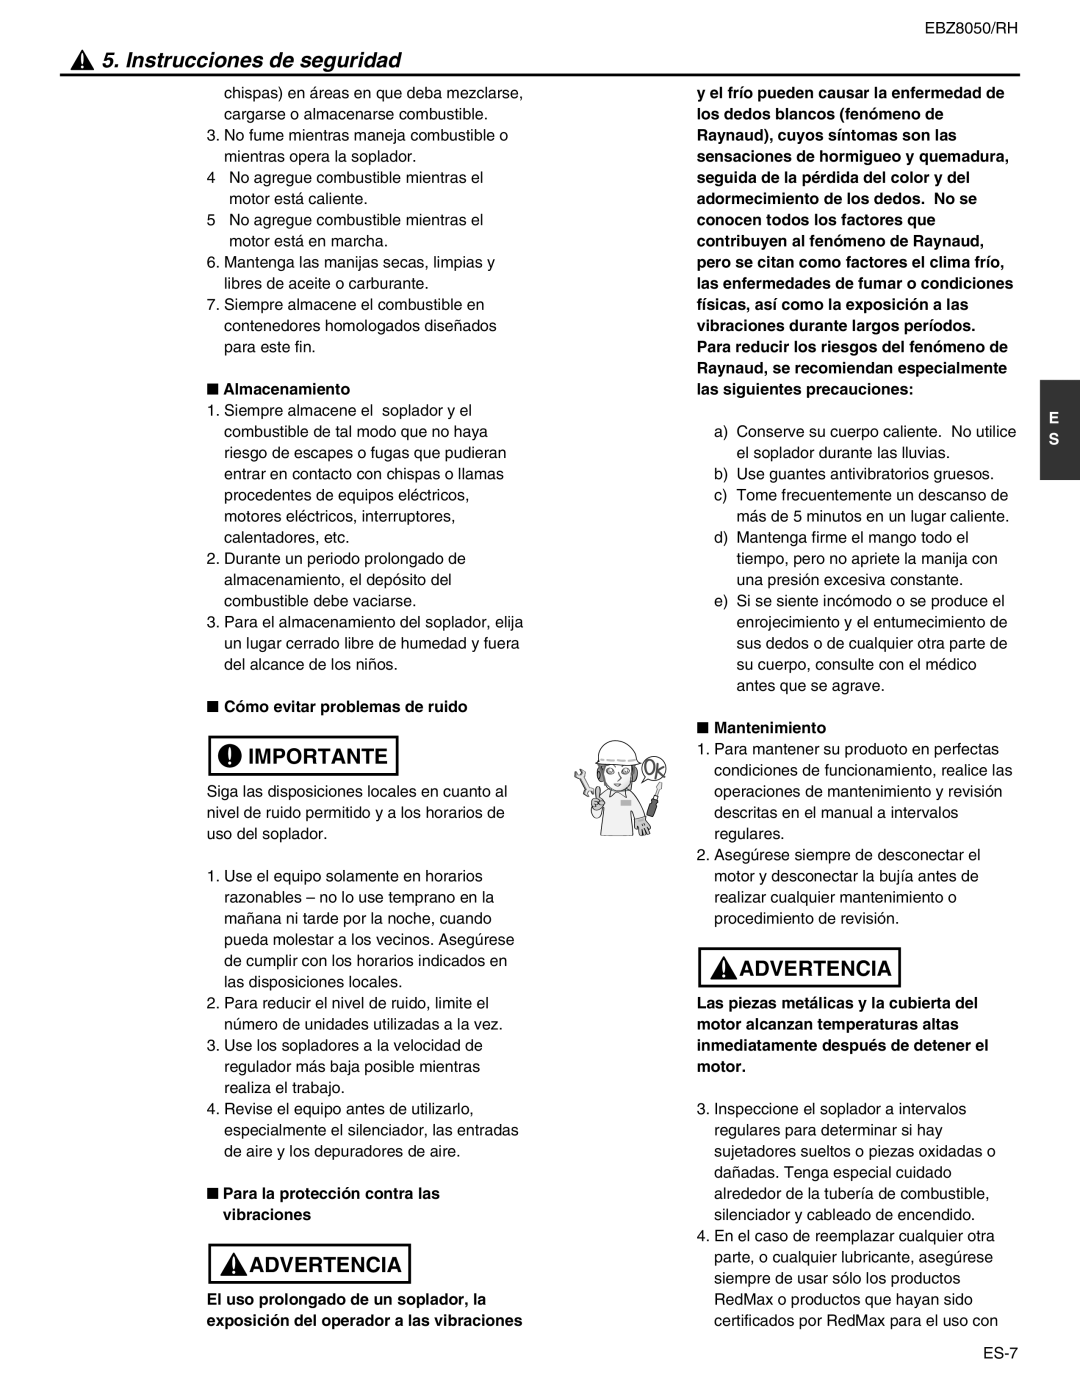 RedMax EBZ8050RH manual Instrucciones de seguridad, Importante, Advertencia, Almacenamiento, Cómo evitar problemas de ruido 